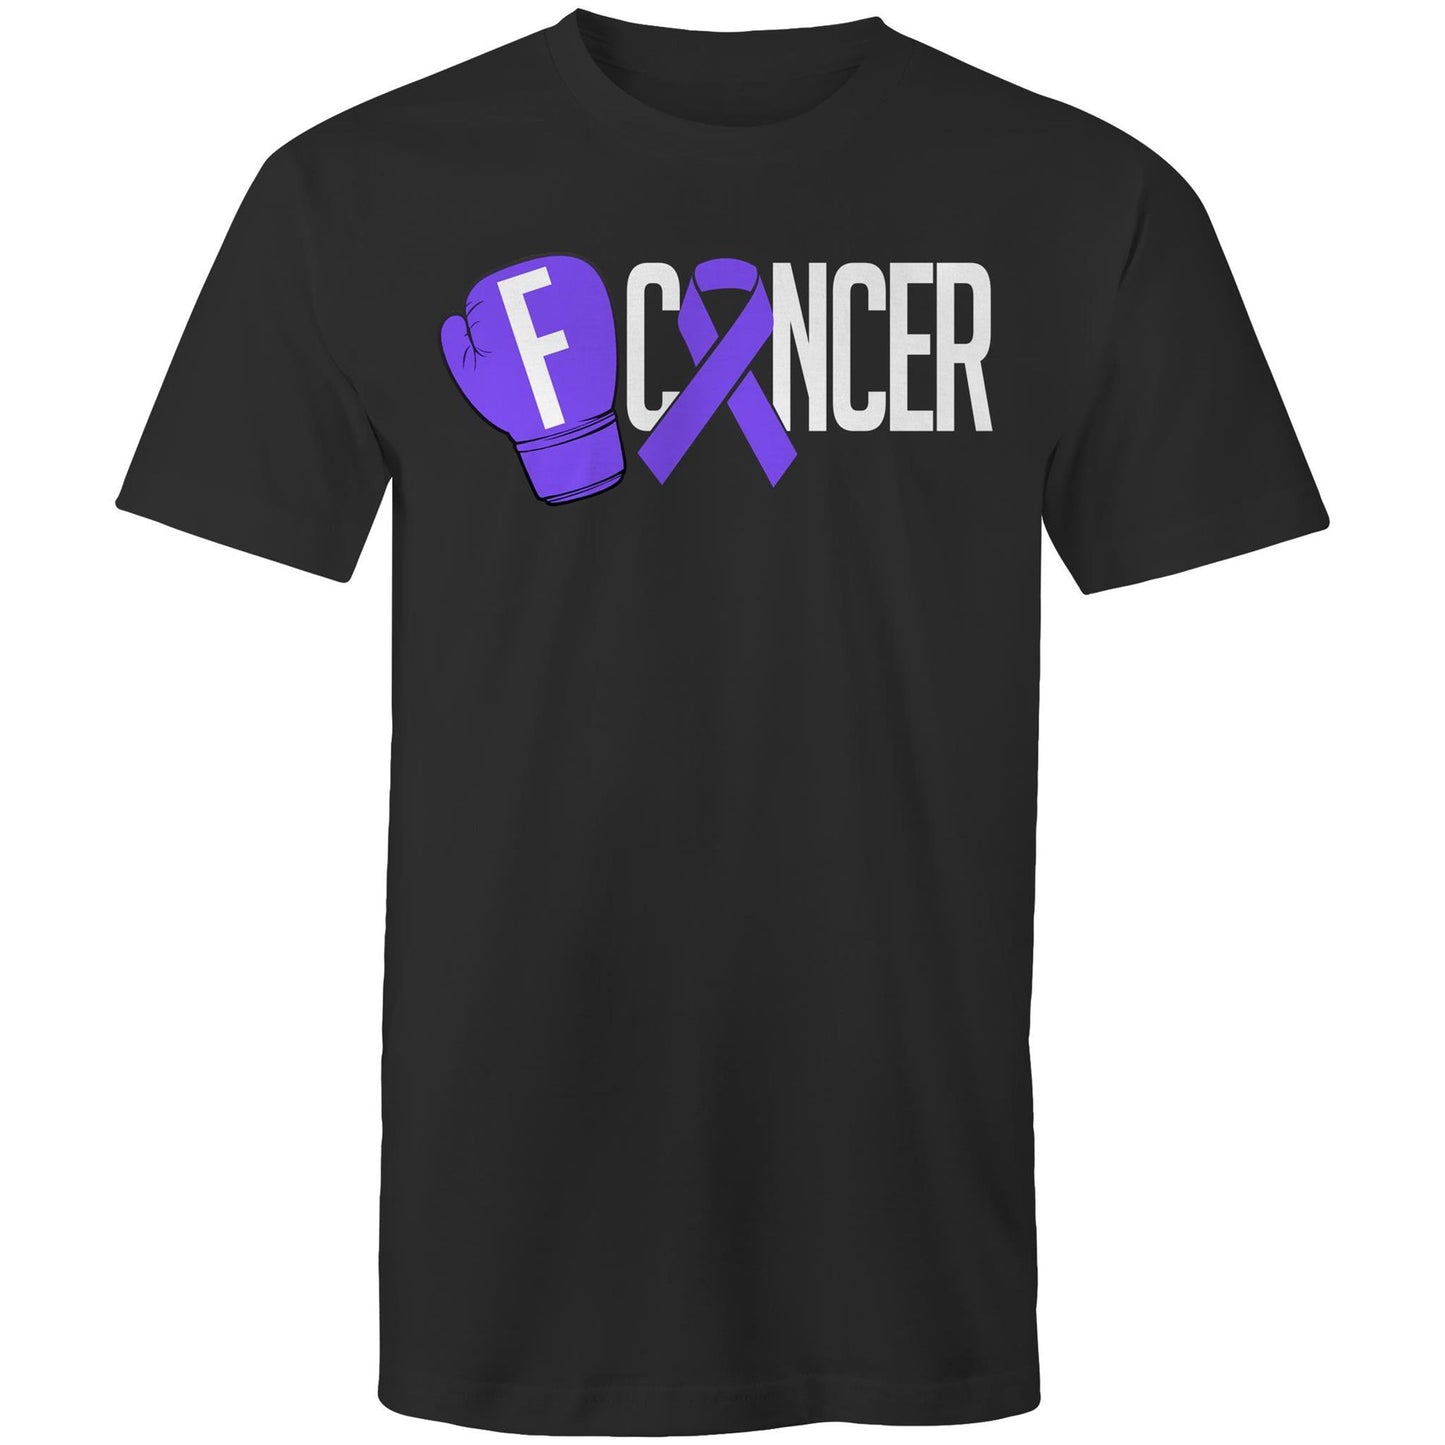 Testicular Cancer T-Shirt